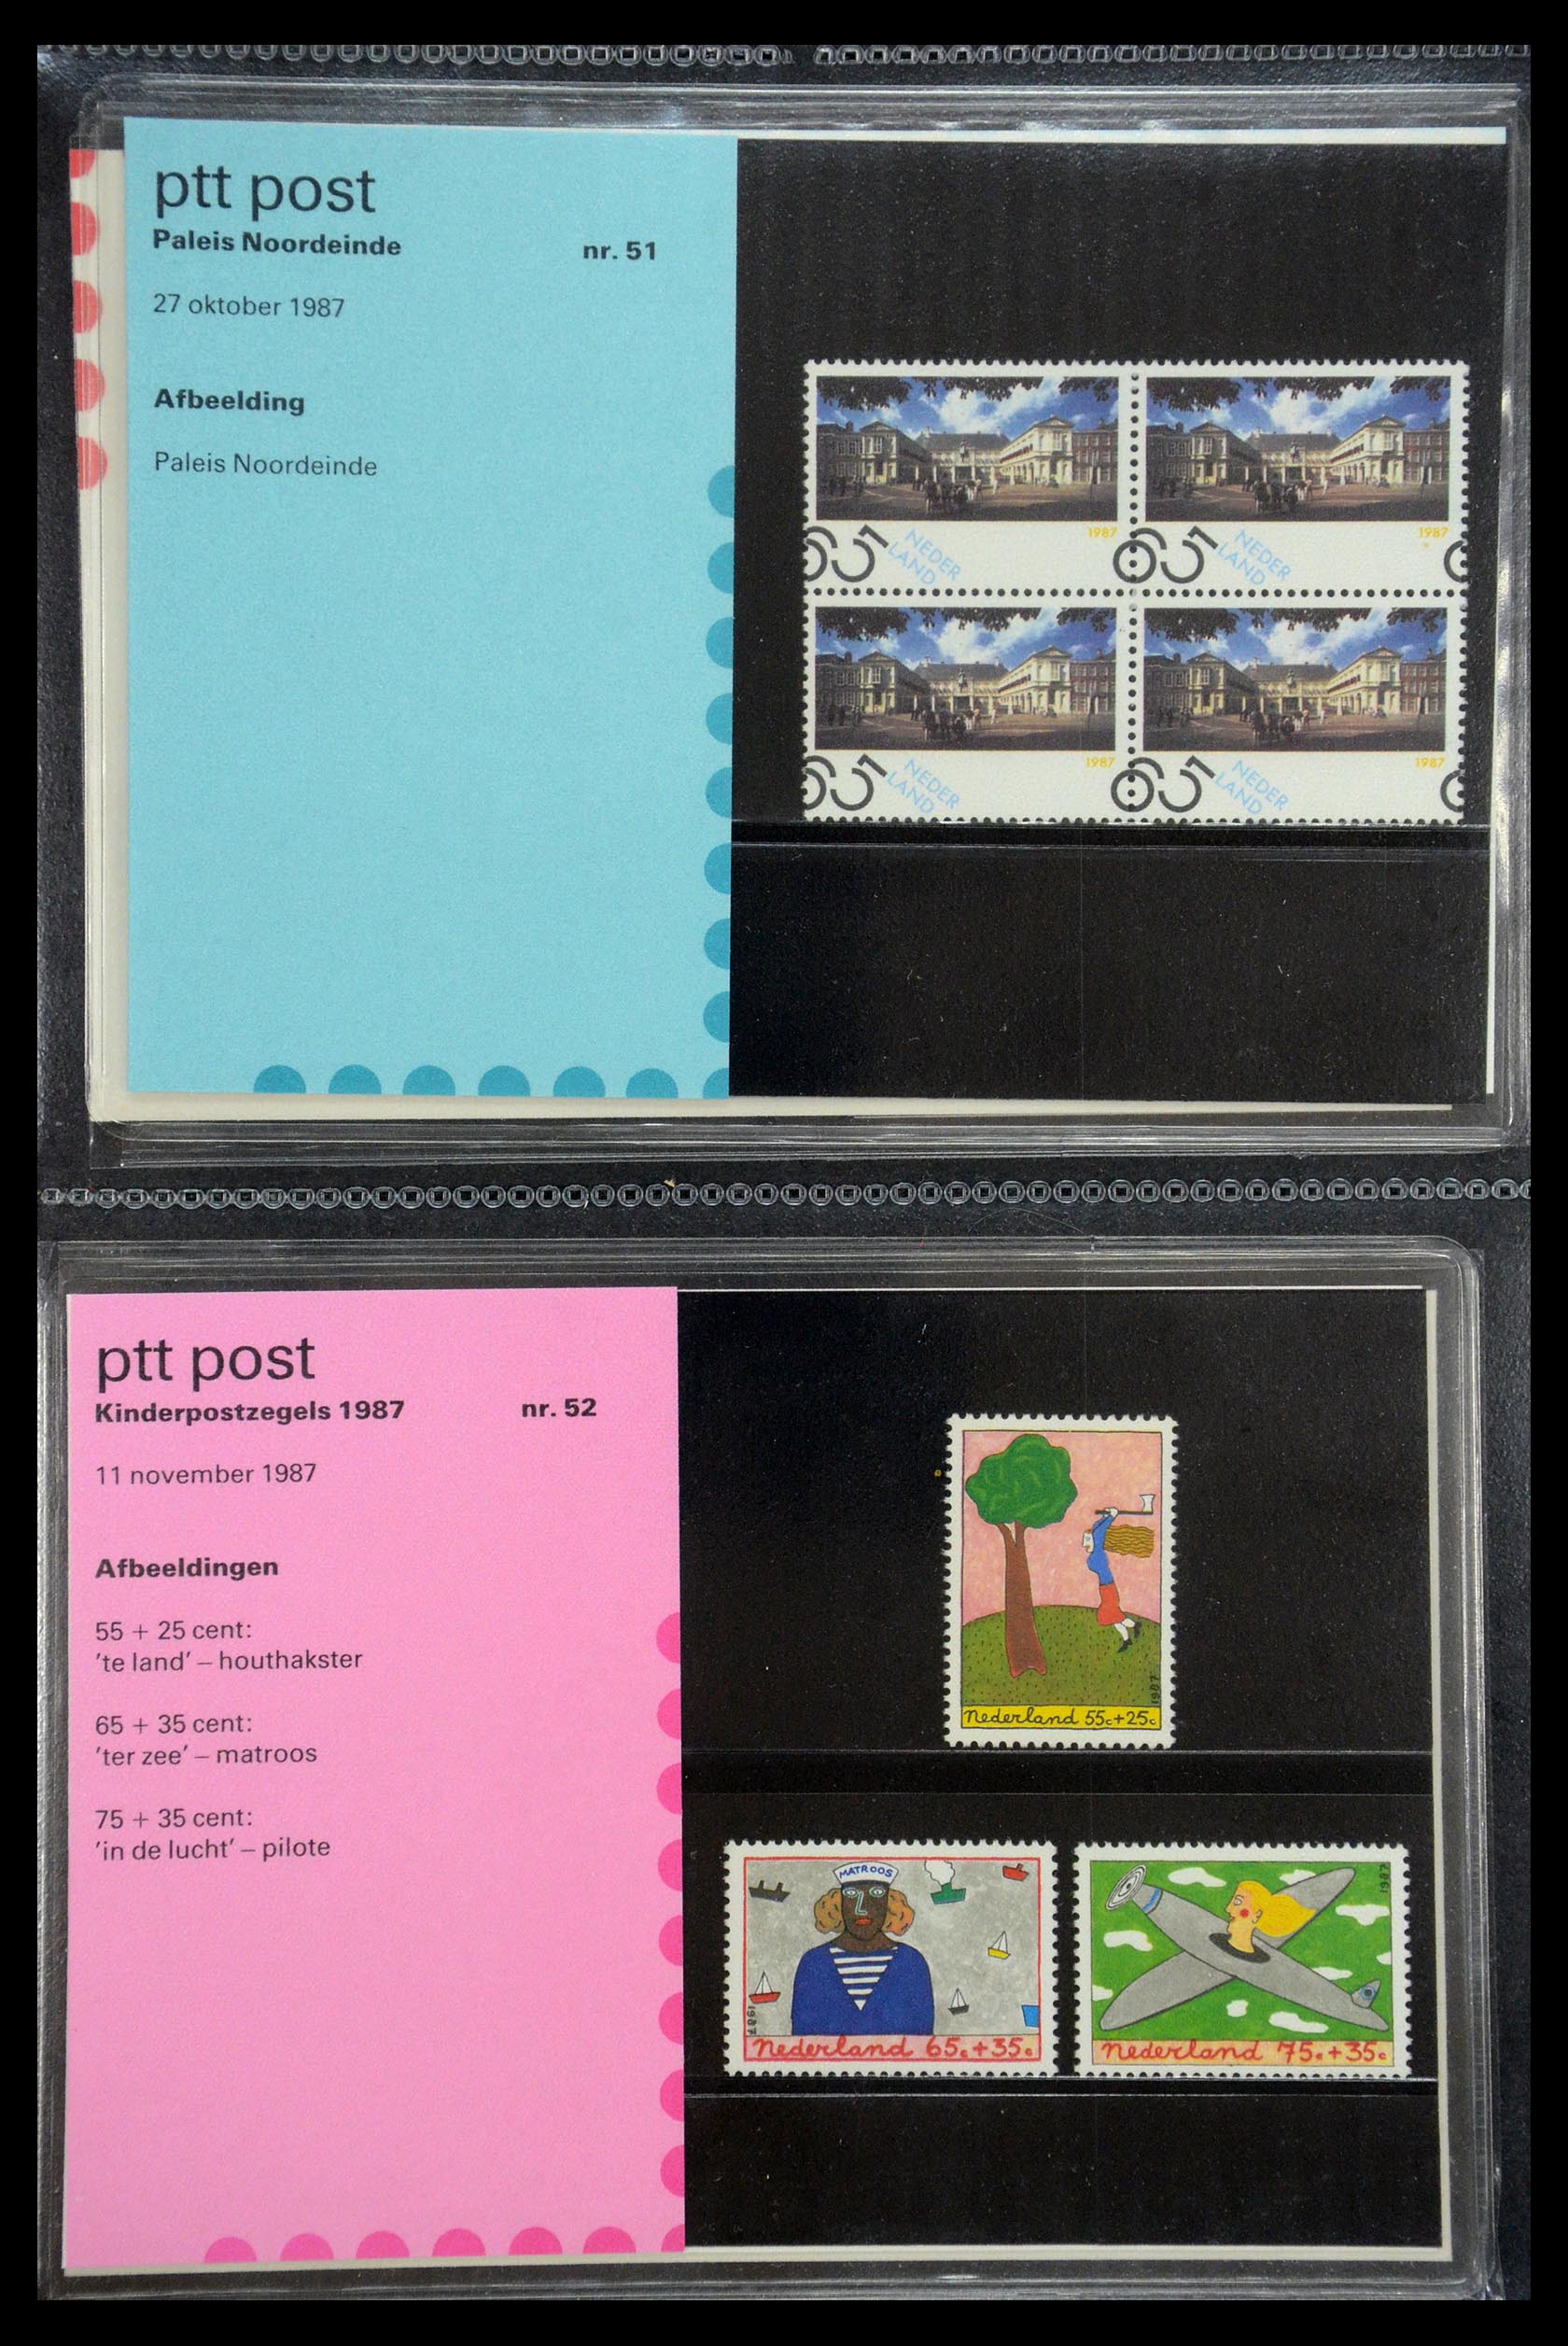 35187 026 - Stamp Collection 35187 Netherlands PTT presentation packs 1982-2019!